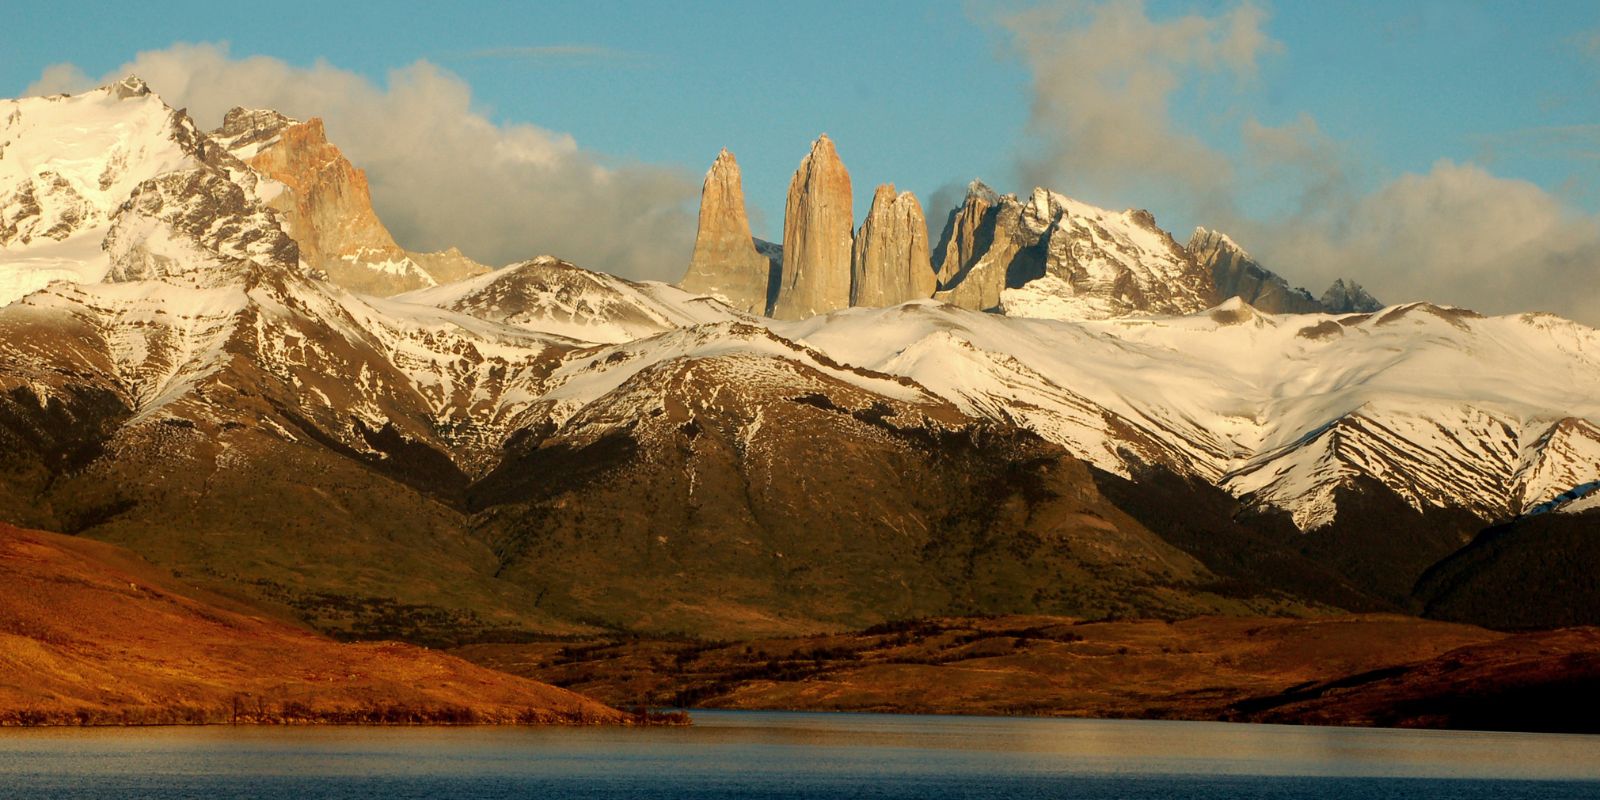 Patagonia
Adventure